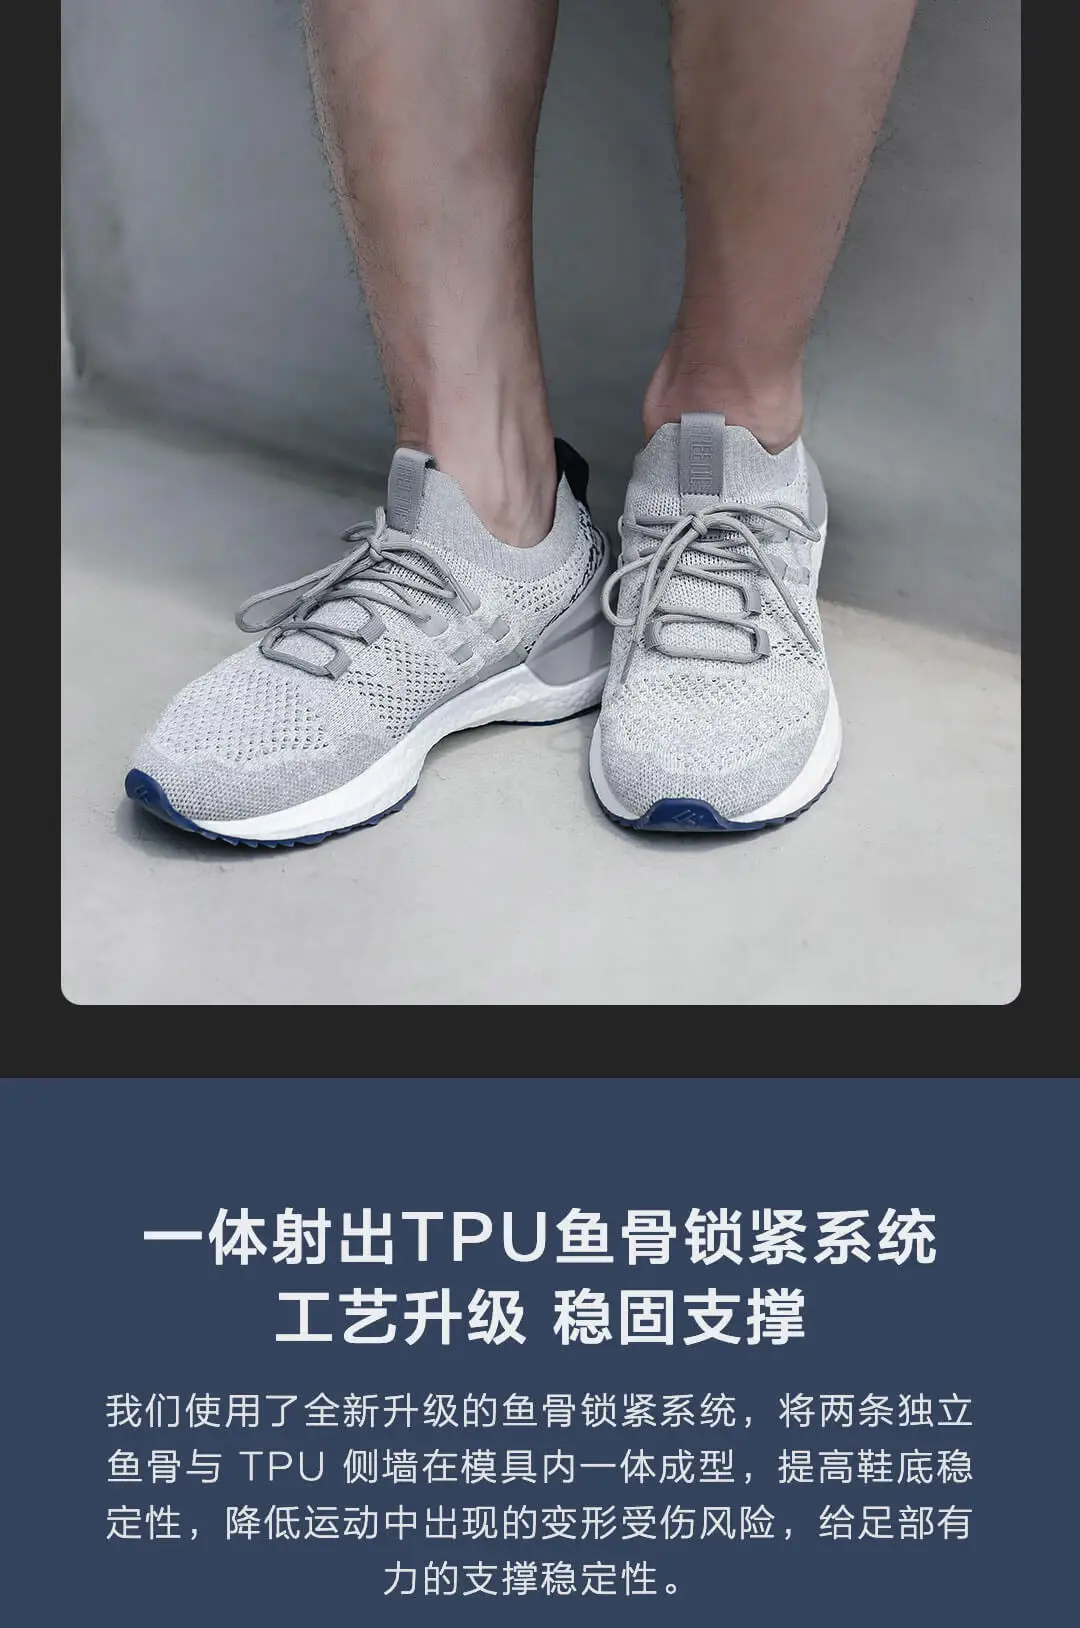 Xiaomi Mijia оригинальные FREETIE Cloud shell амортизирующие кроссовки 2 с фиксатором в виде рыбьей кости ETPU спортивная обувь